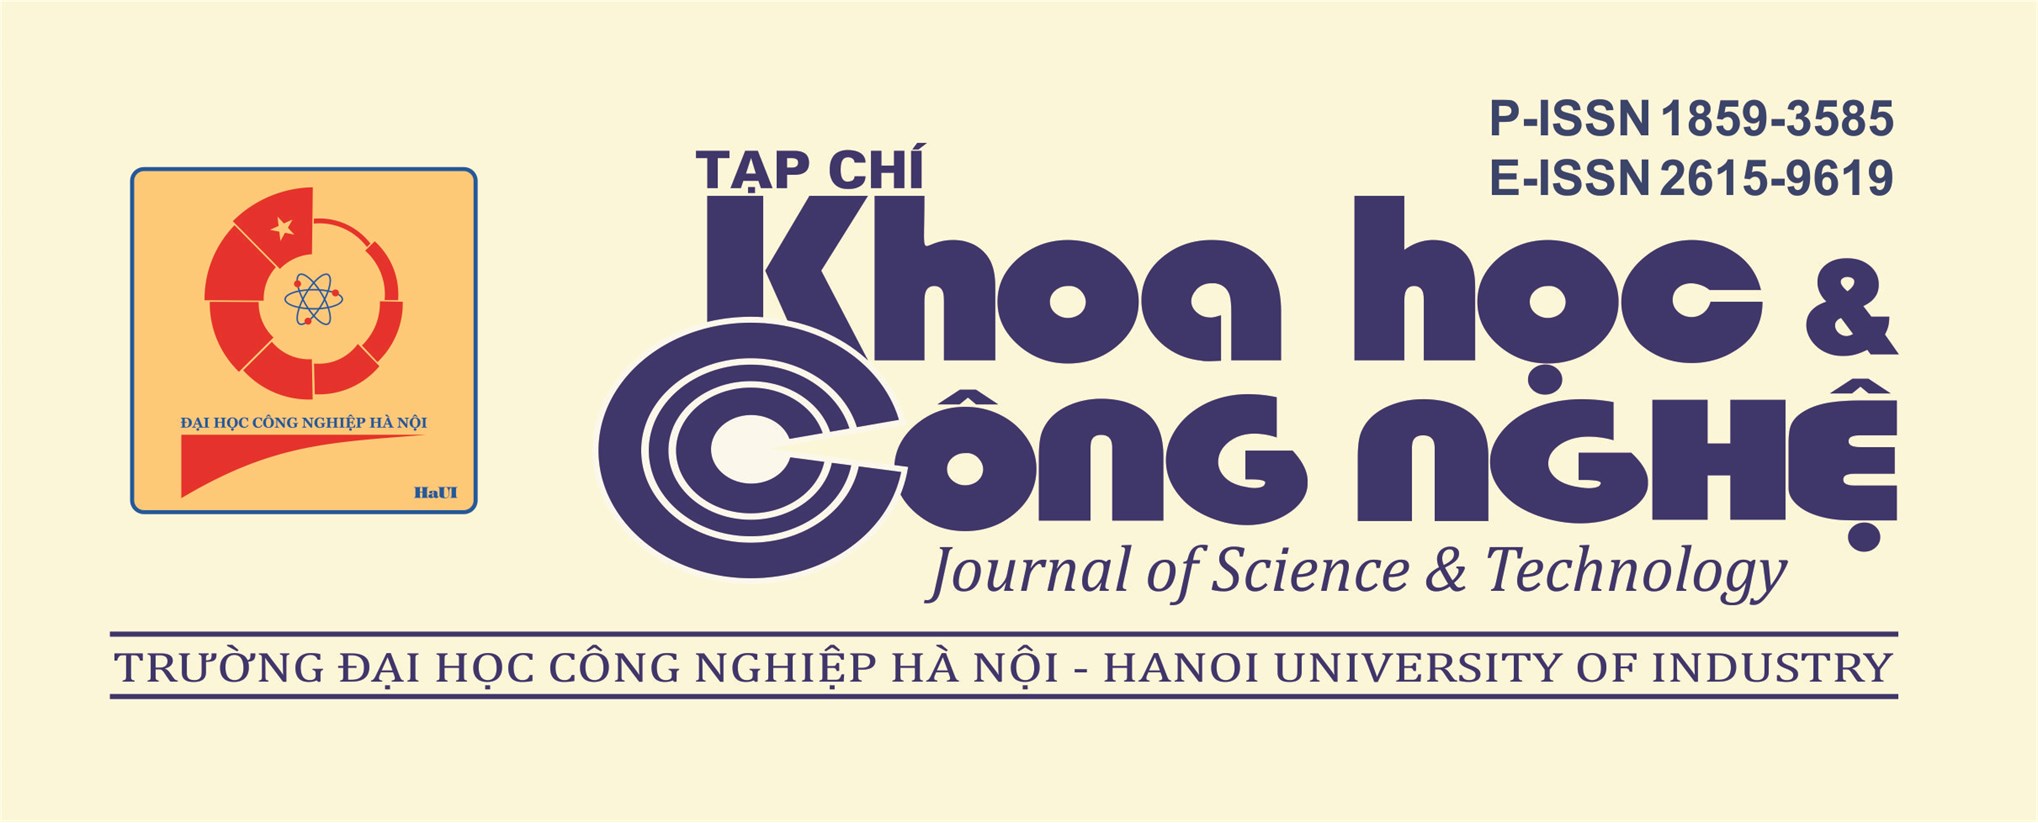 Nâng điểm công trình khoa học cho Tạp chí Khoa học & Công nghệ - Trường Đại học Công nghiệp Hà Nội